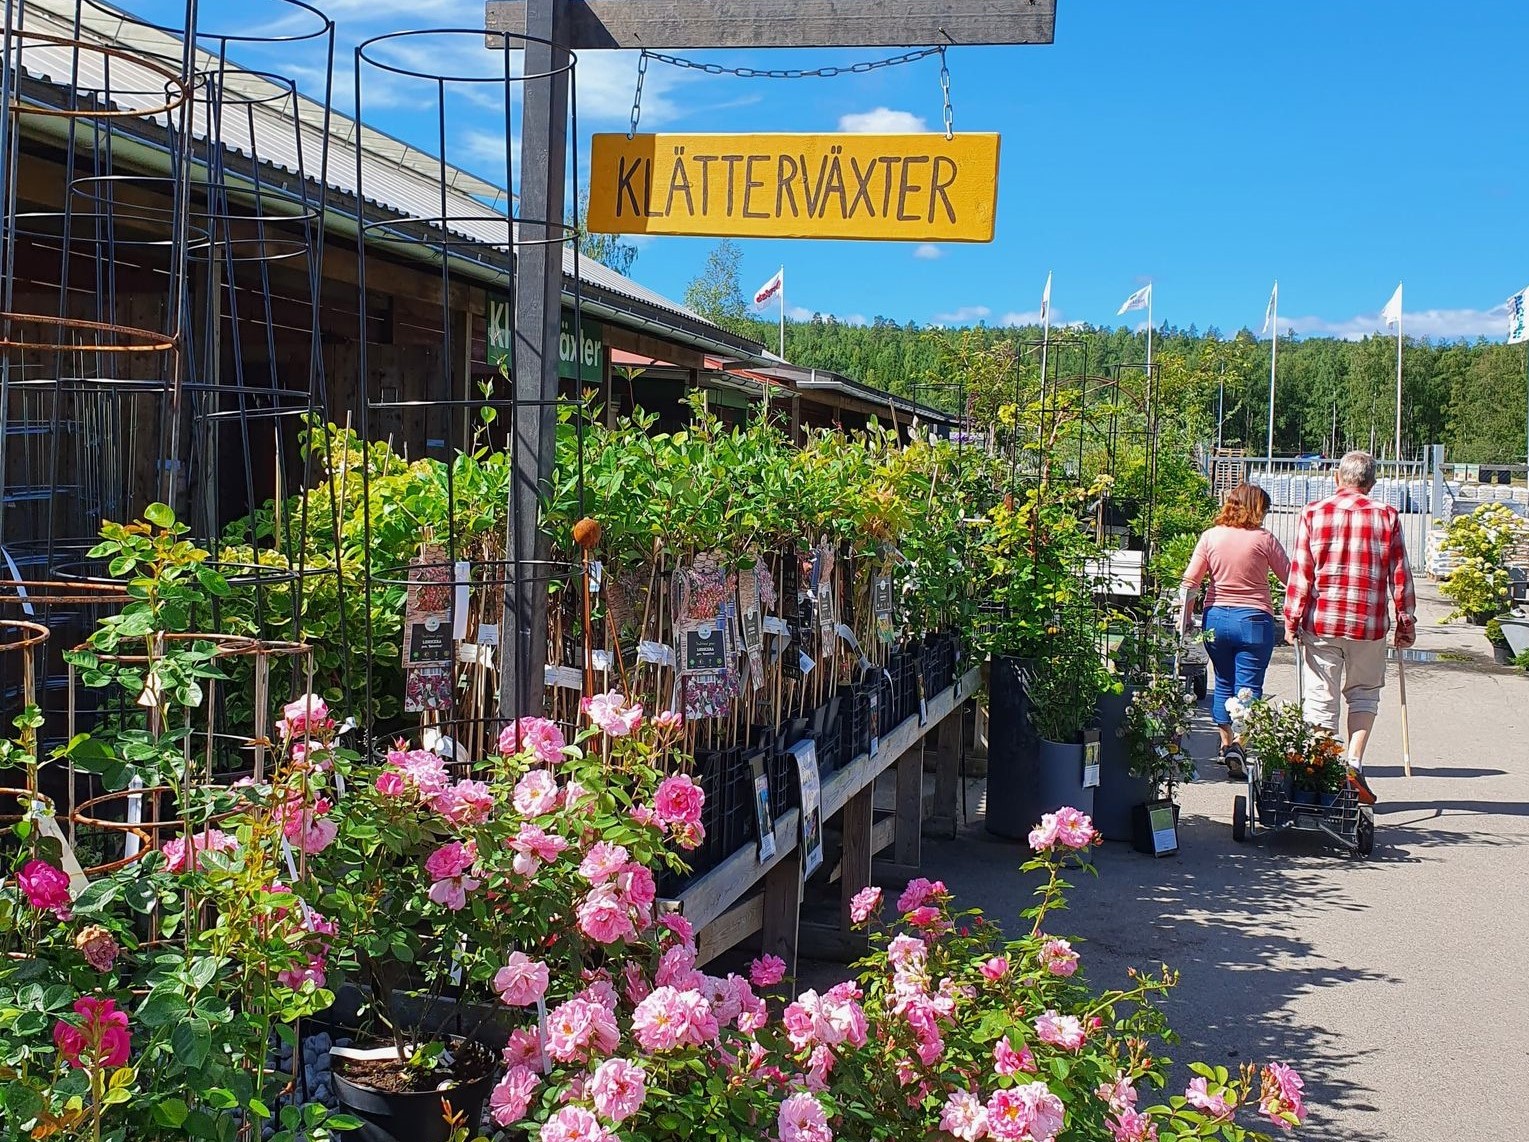 populära handelsträdgård i Hälsingland